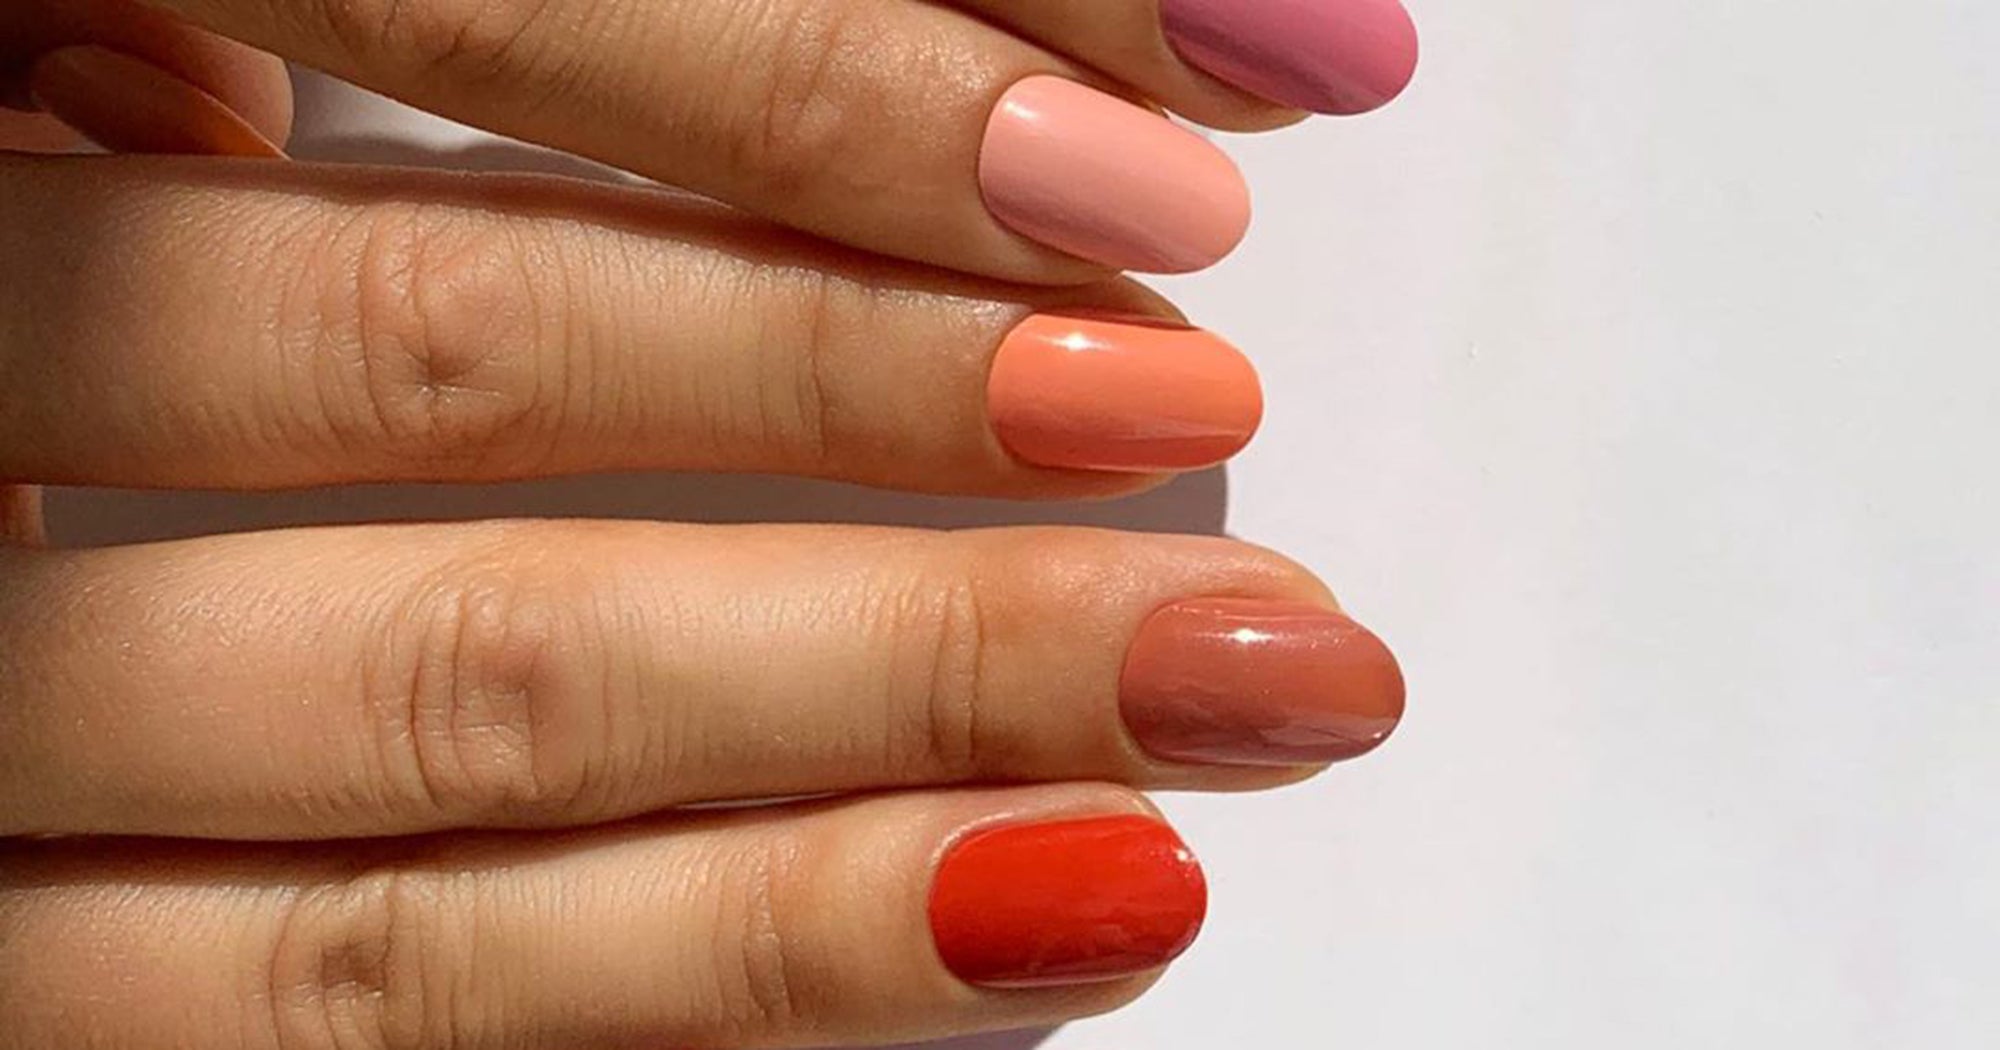 Cute plaid nail designs for autumn 2021 : Burnt Orange and Green Plaid Nails